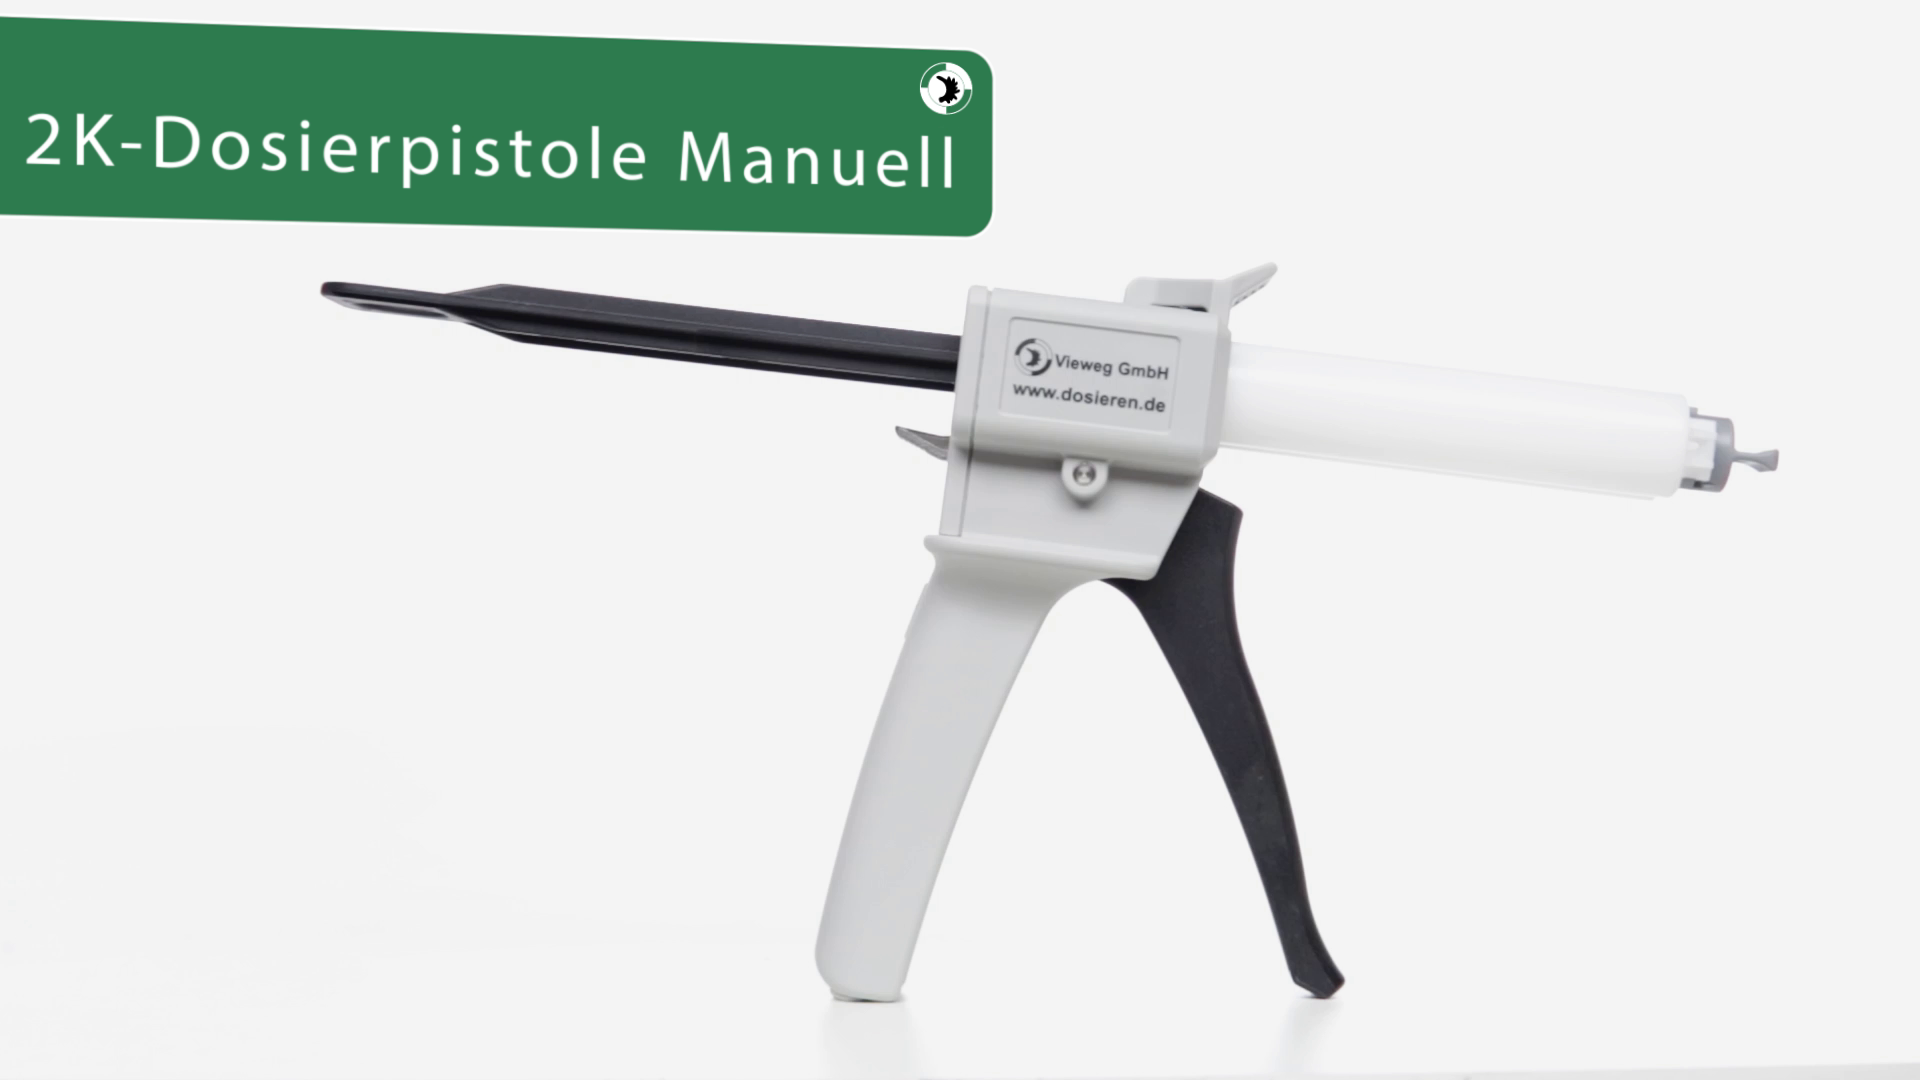 Manual 2K-dispensing hand tool